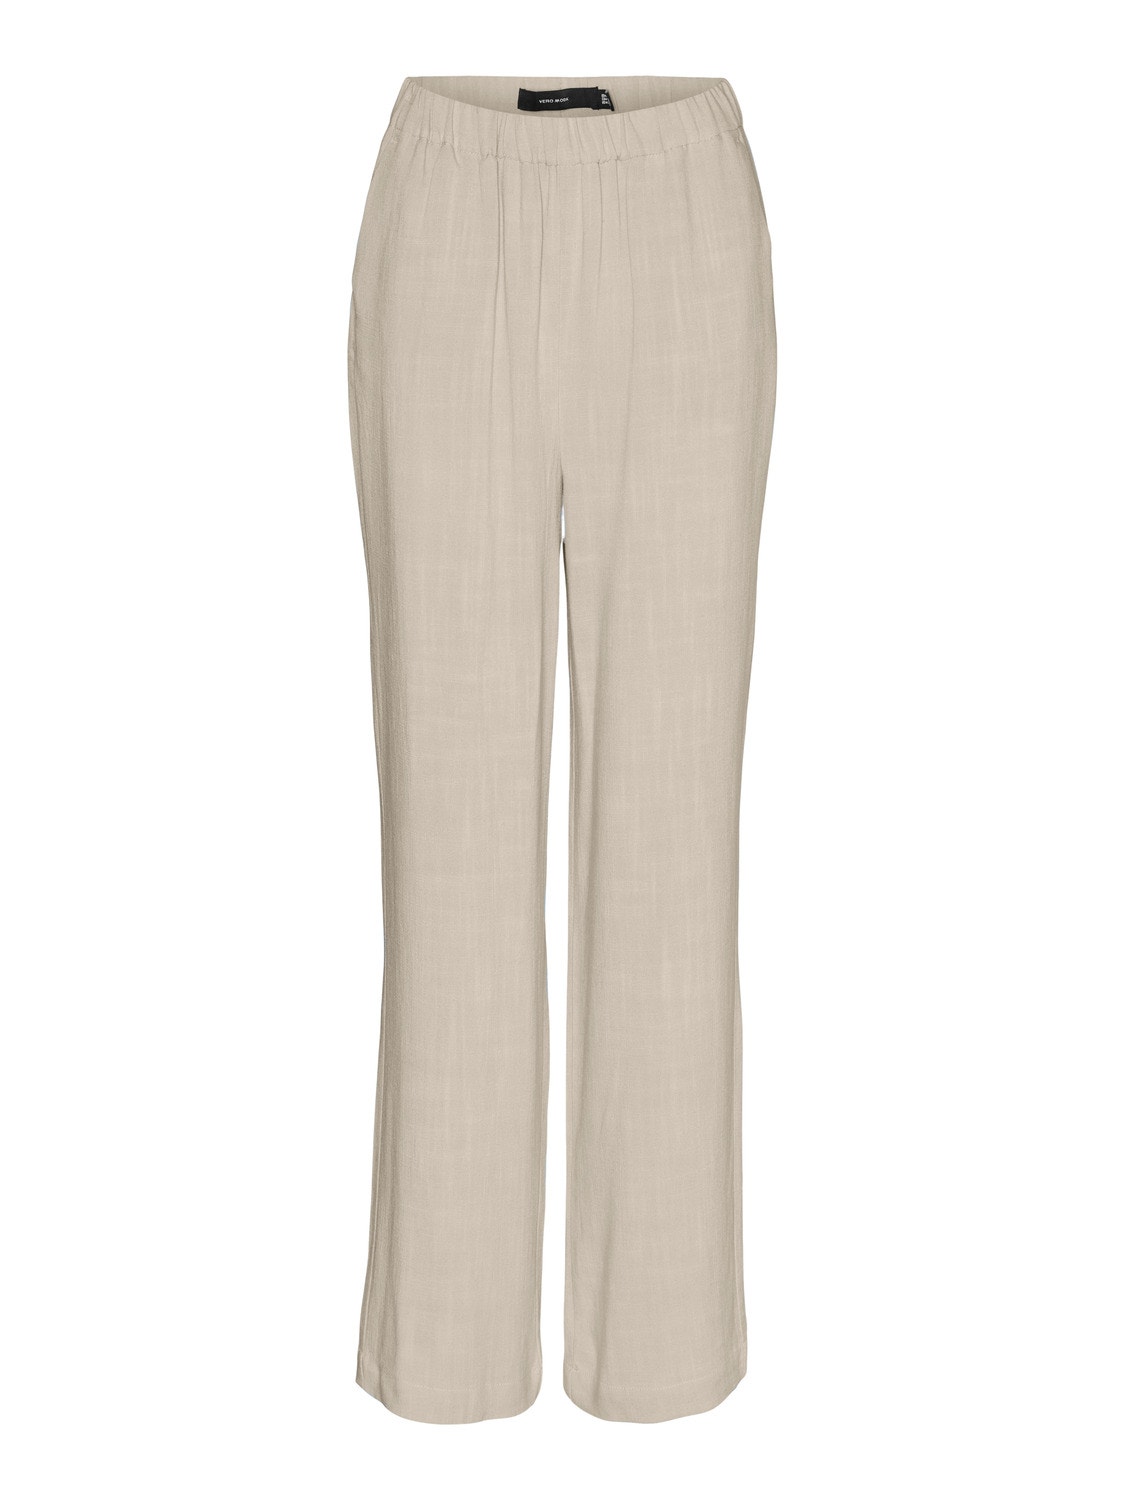 Vero Moda VMTIRAVER Trousers -Oatmeal - 10284568